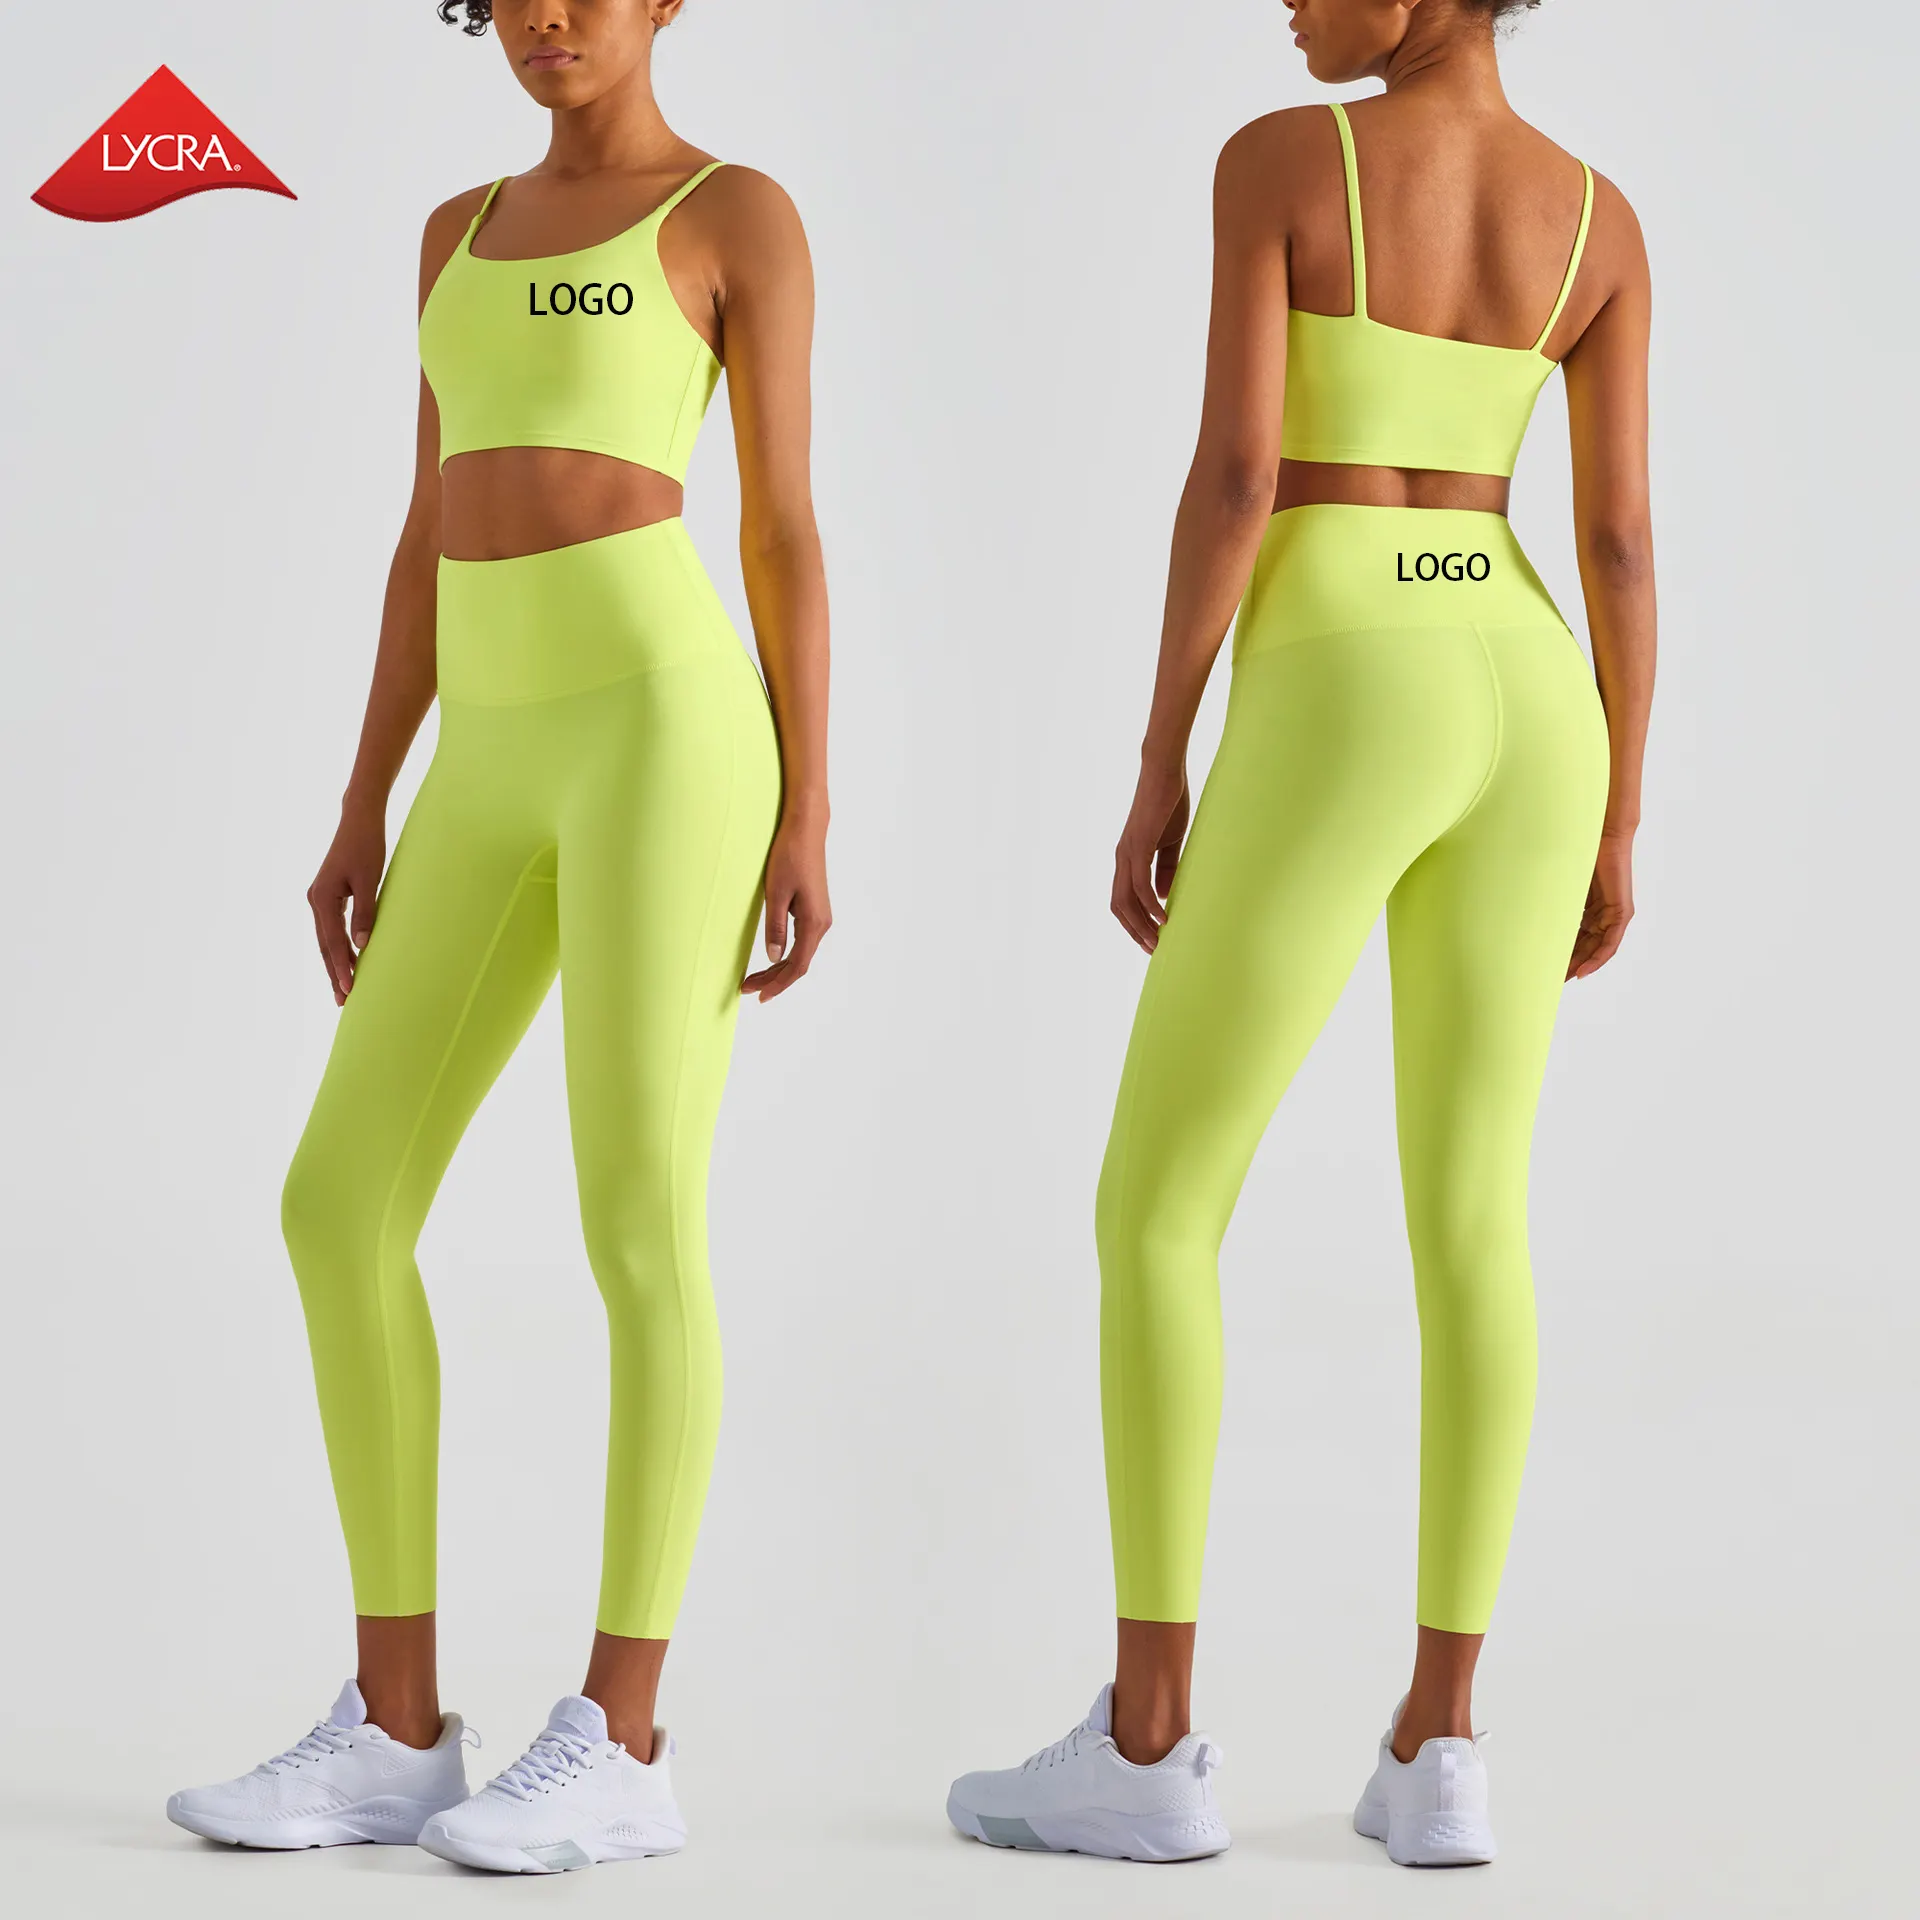 Nova Chegada 80% Nylon 20% Tecido Spandex Lycra Ginásio Sutiã de Fitness Yoga Definir Mulheres Treino Roupas Esportivas E Leggings 2 Set Piece